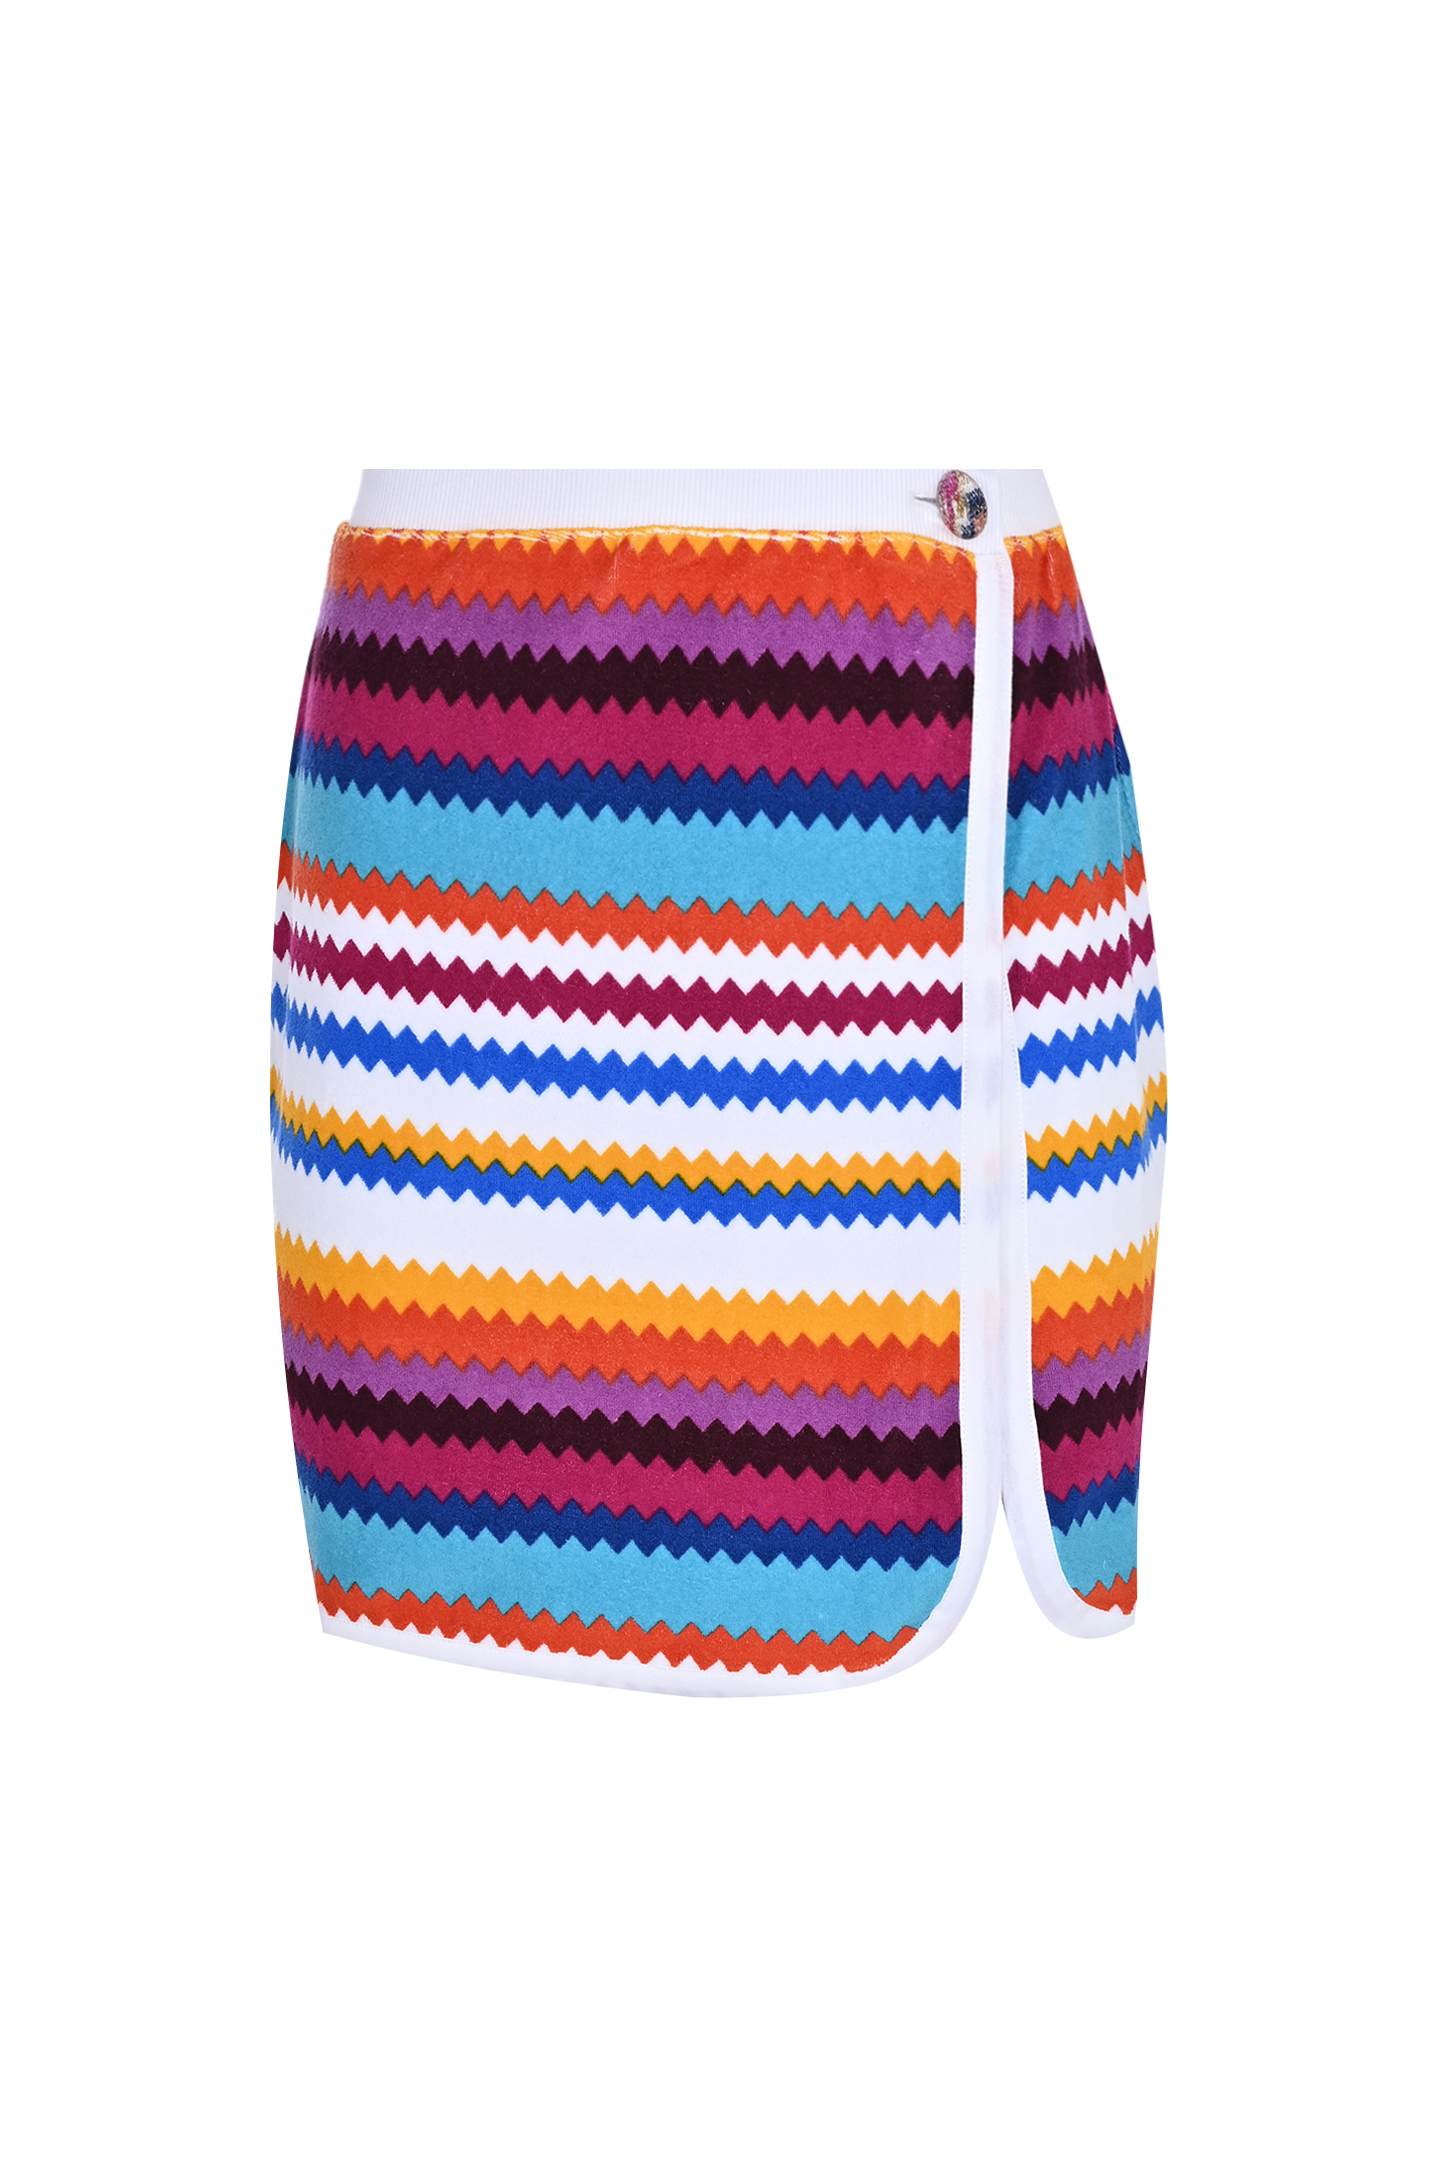 Хлопковая юбка в полоску MISSONI MS24SH0B-BJ00J8, цвет: Разноцветный, Женский